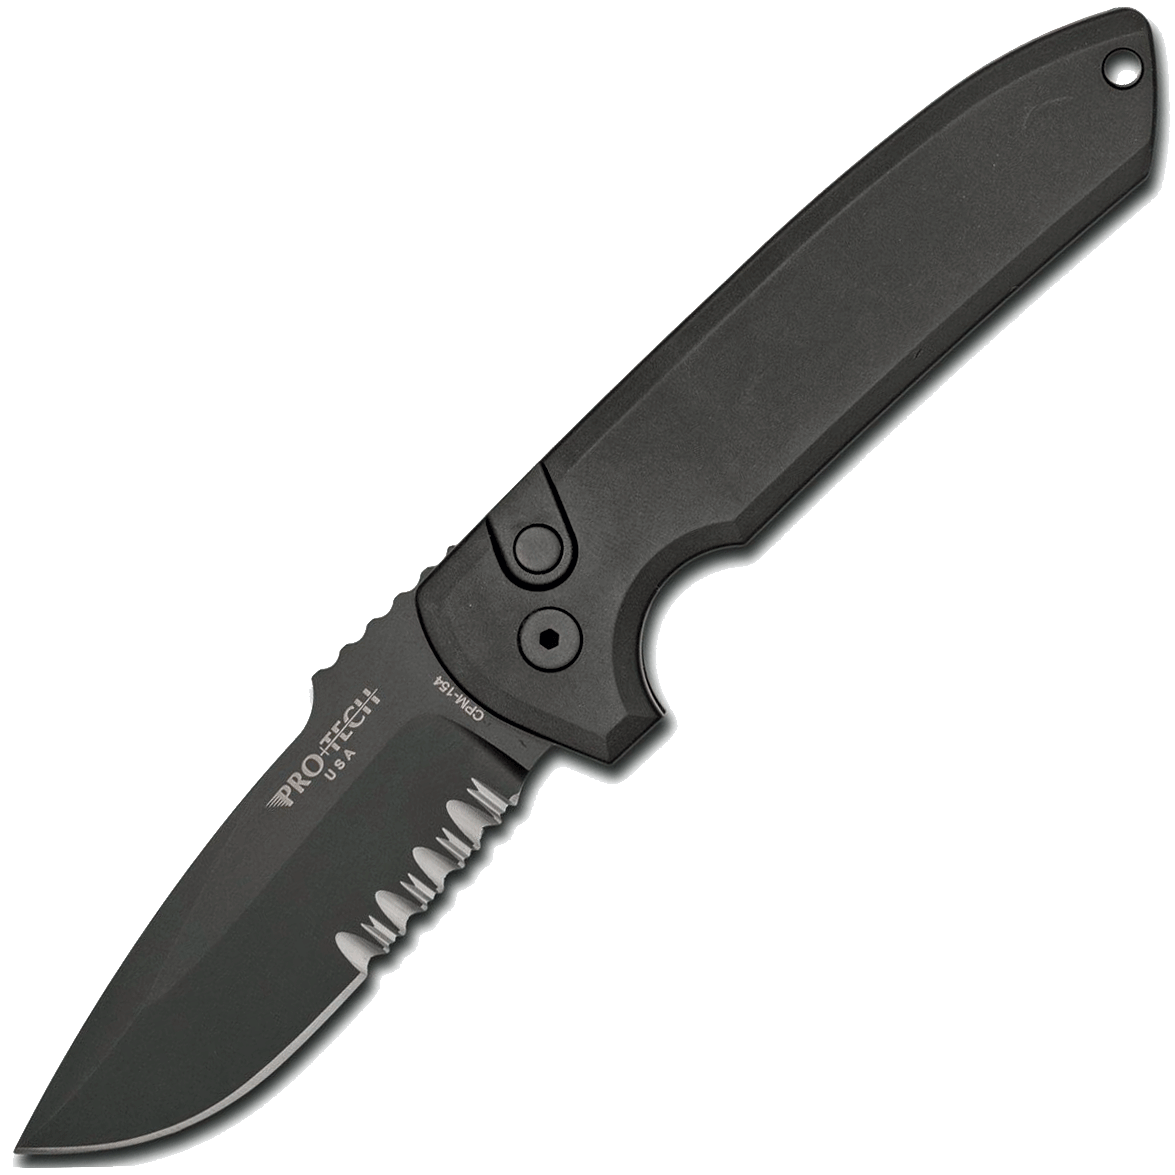 Автоматический складной нож Pro-Tech Rockeye, клинок черный Combo, сталь CPM154, рукоять алюминий